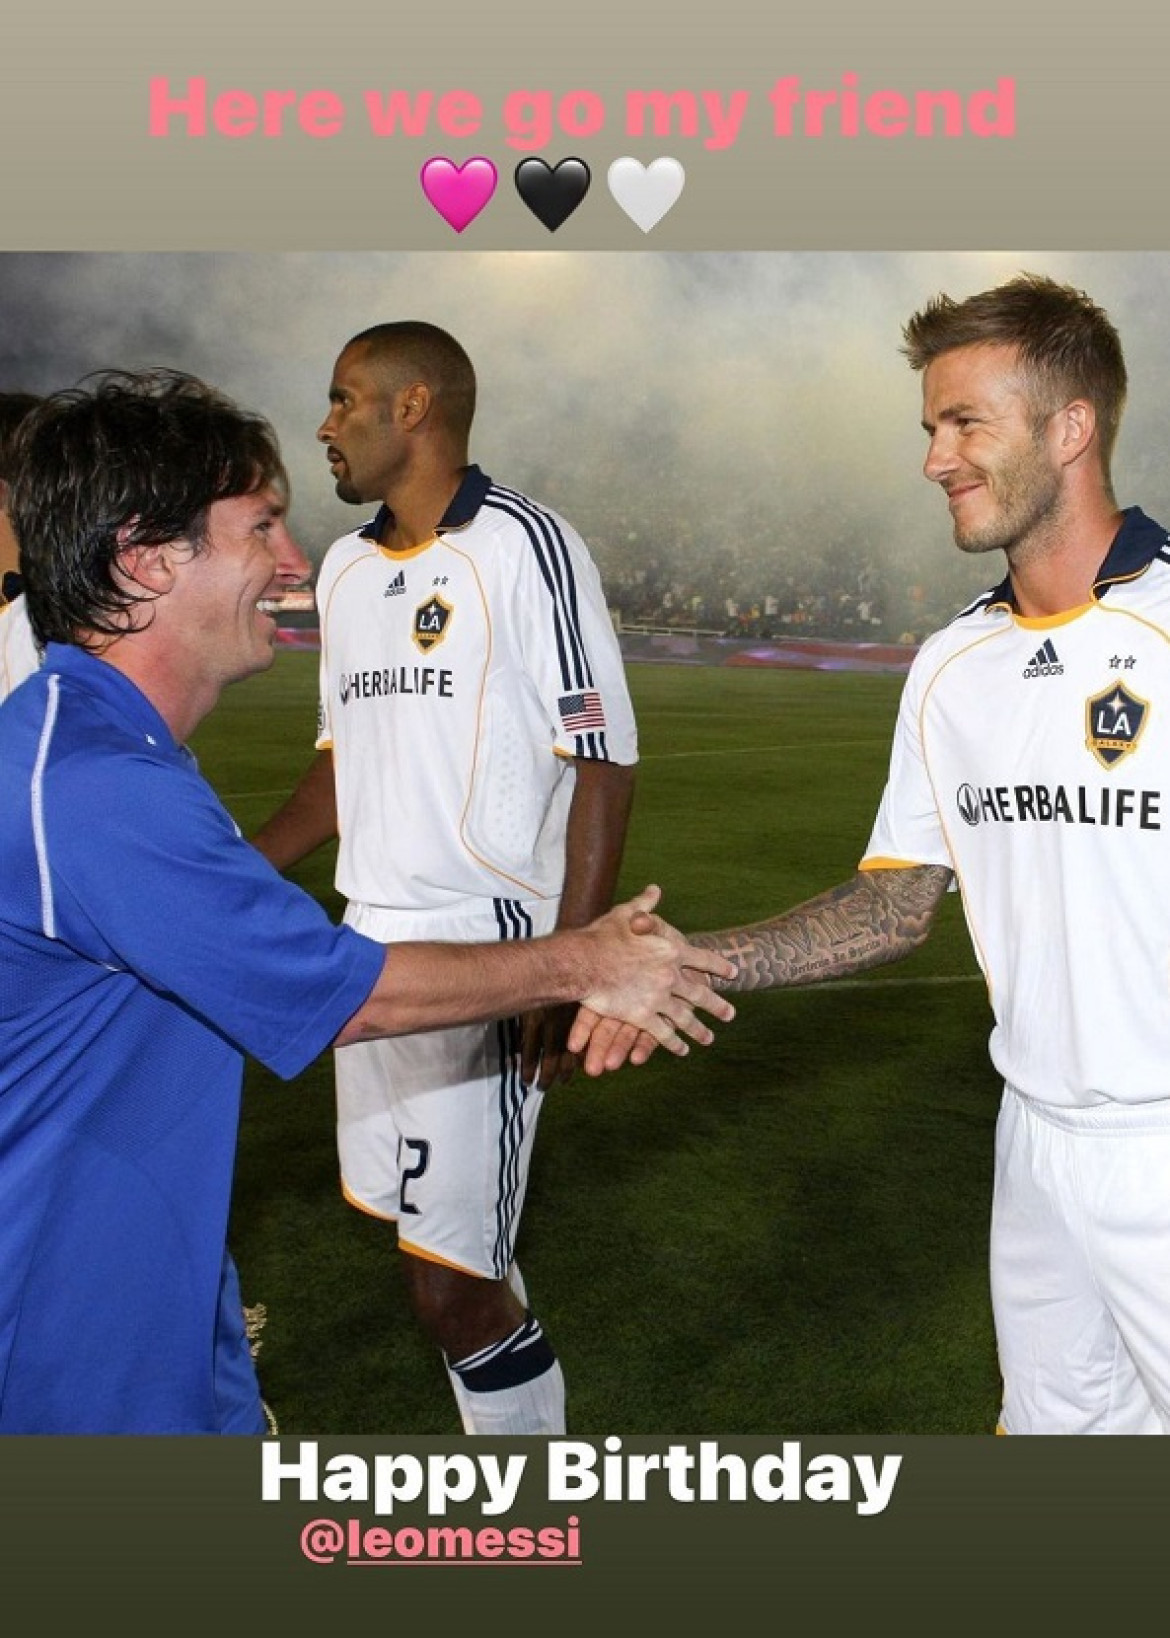 El saludo de David Beckham a Lionel Messi. Foto: Instagram @davidbeckham.